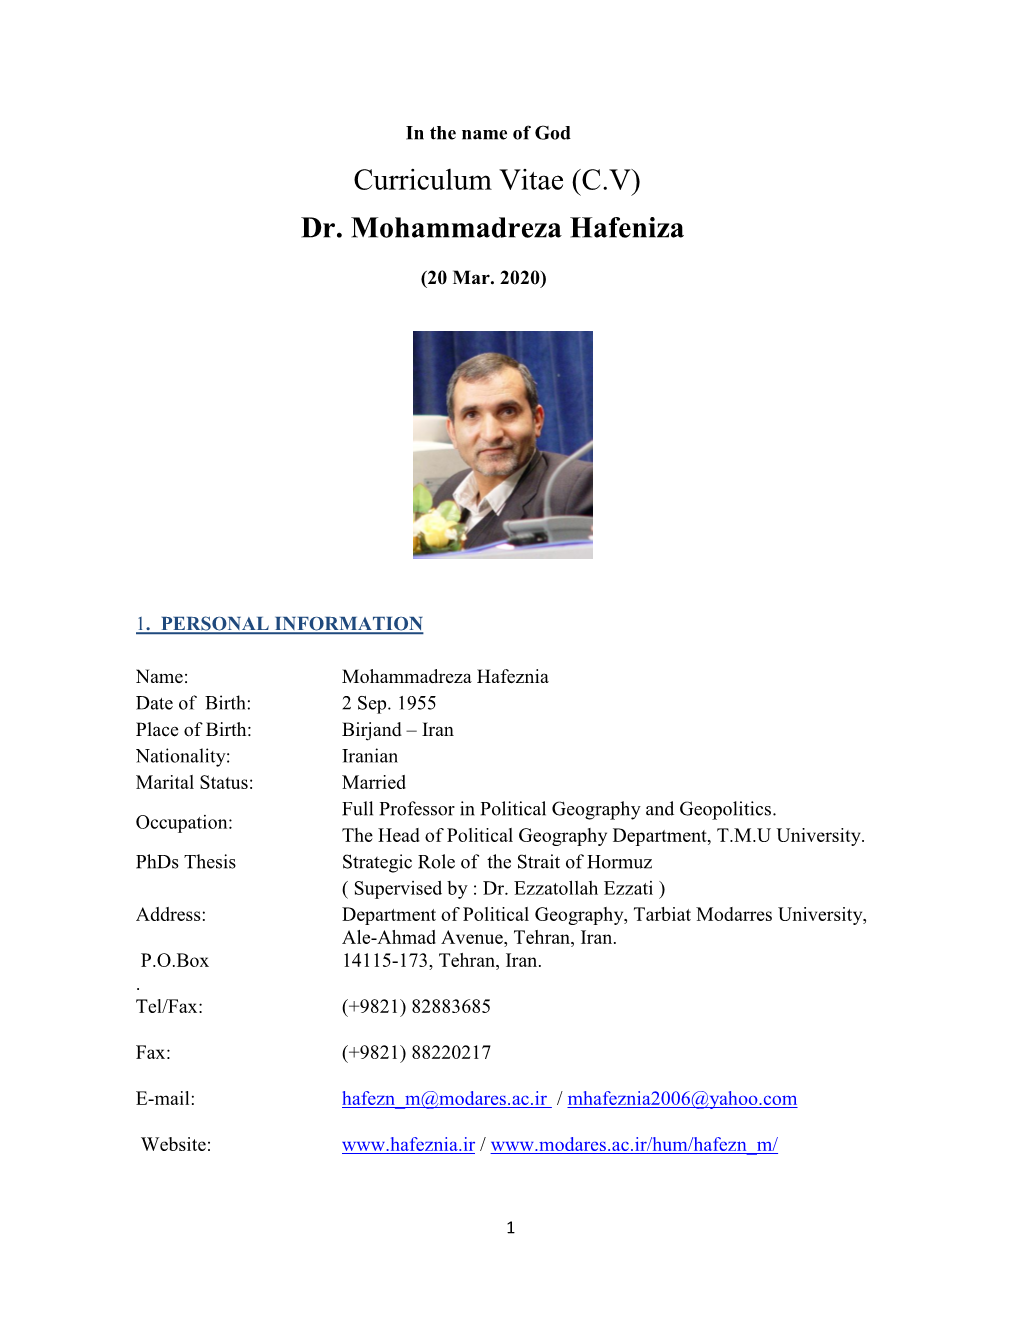 Curriculum Vitae (C.V) Dr. Mohammadreza Hafeniza